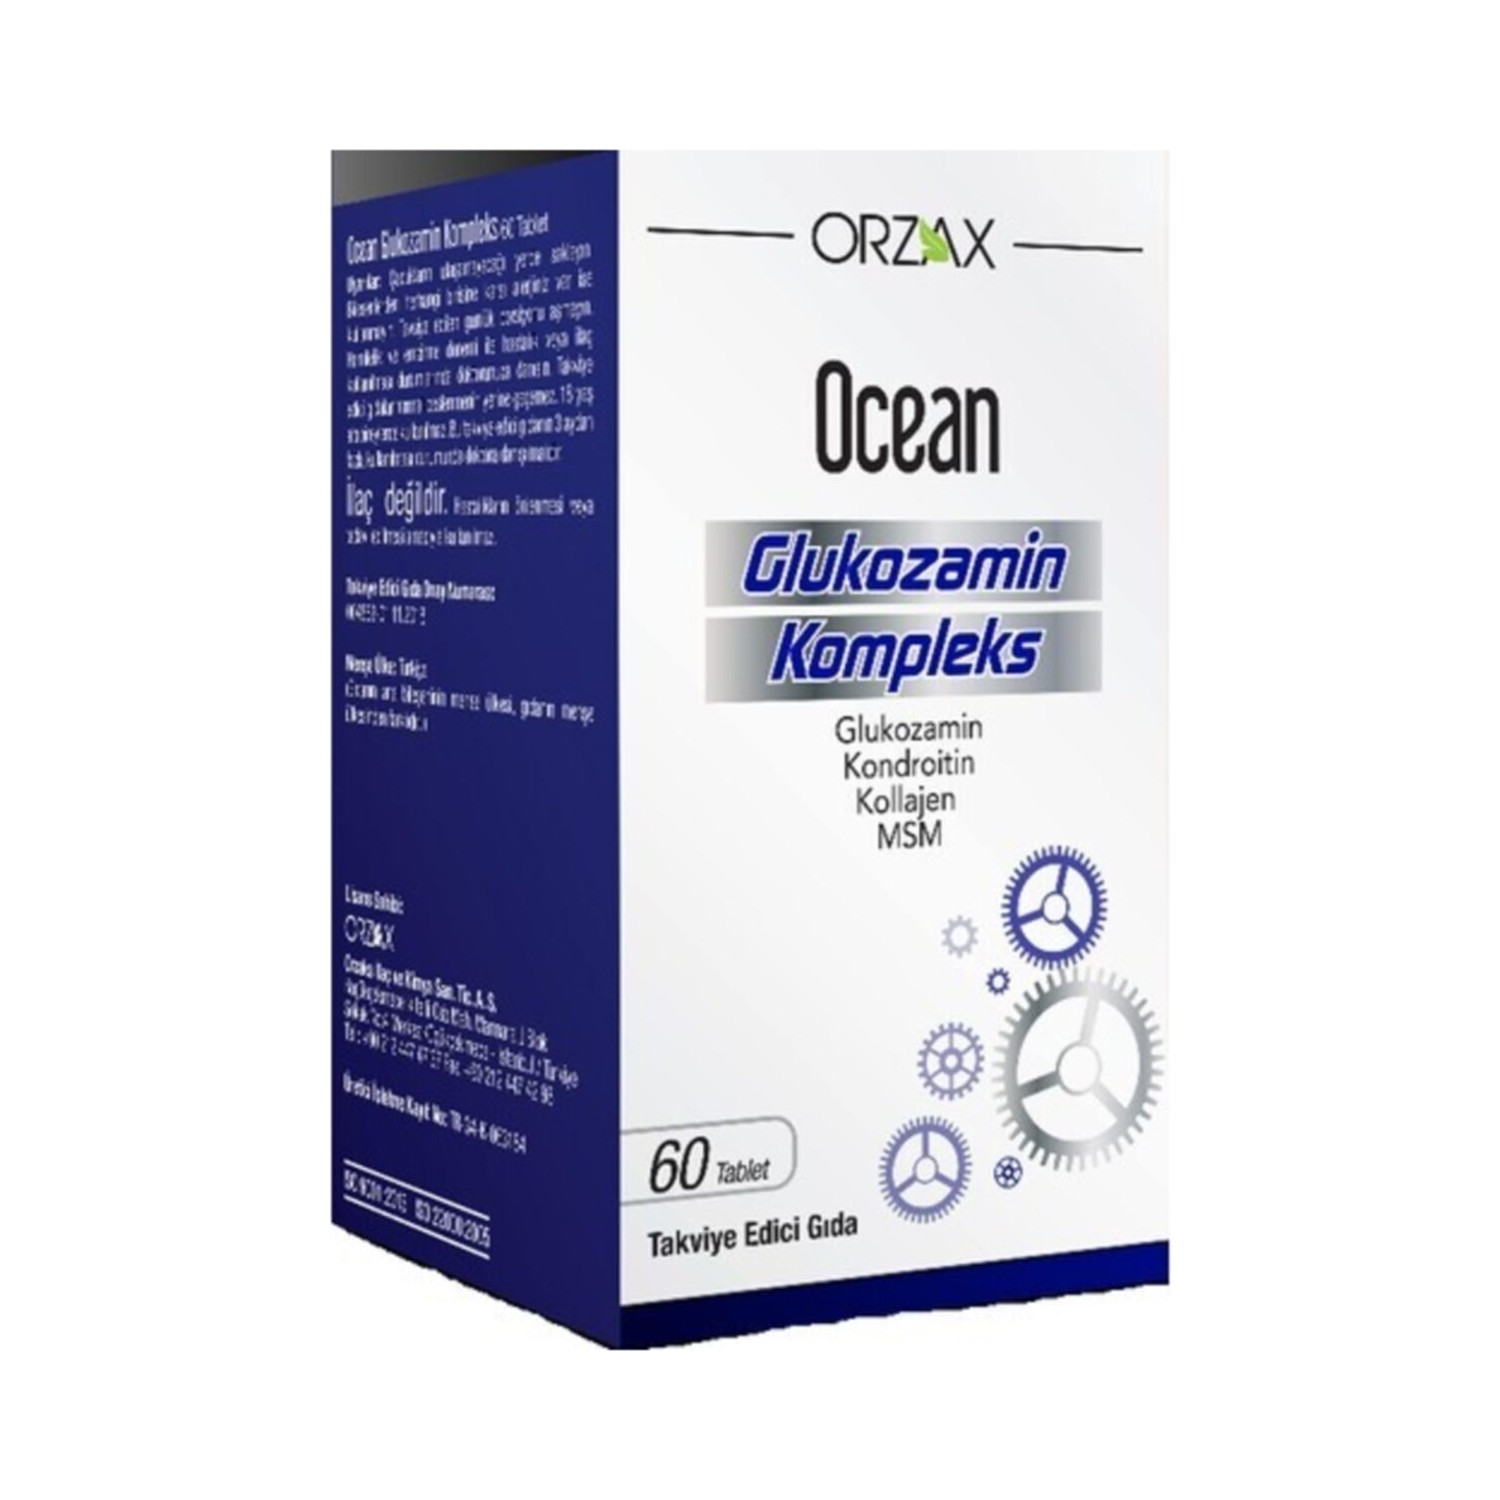 Комплекс глюкозамина Ocean, 60 таблетокs